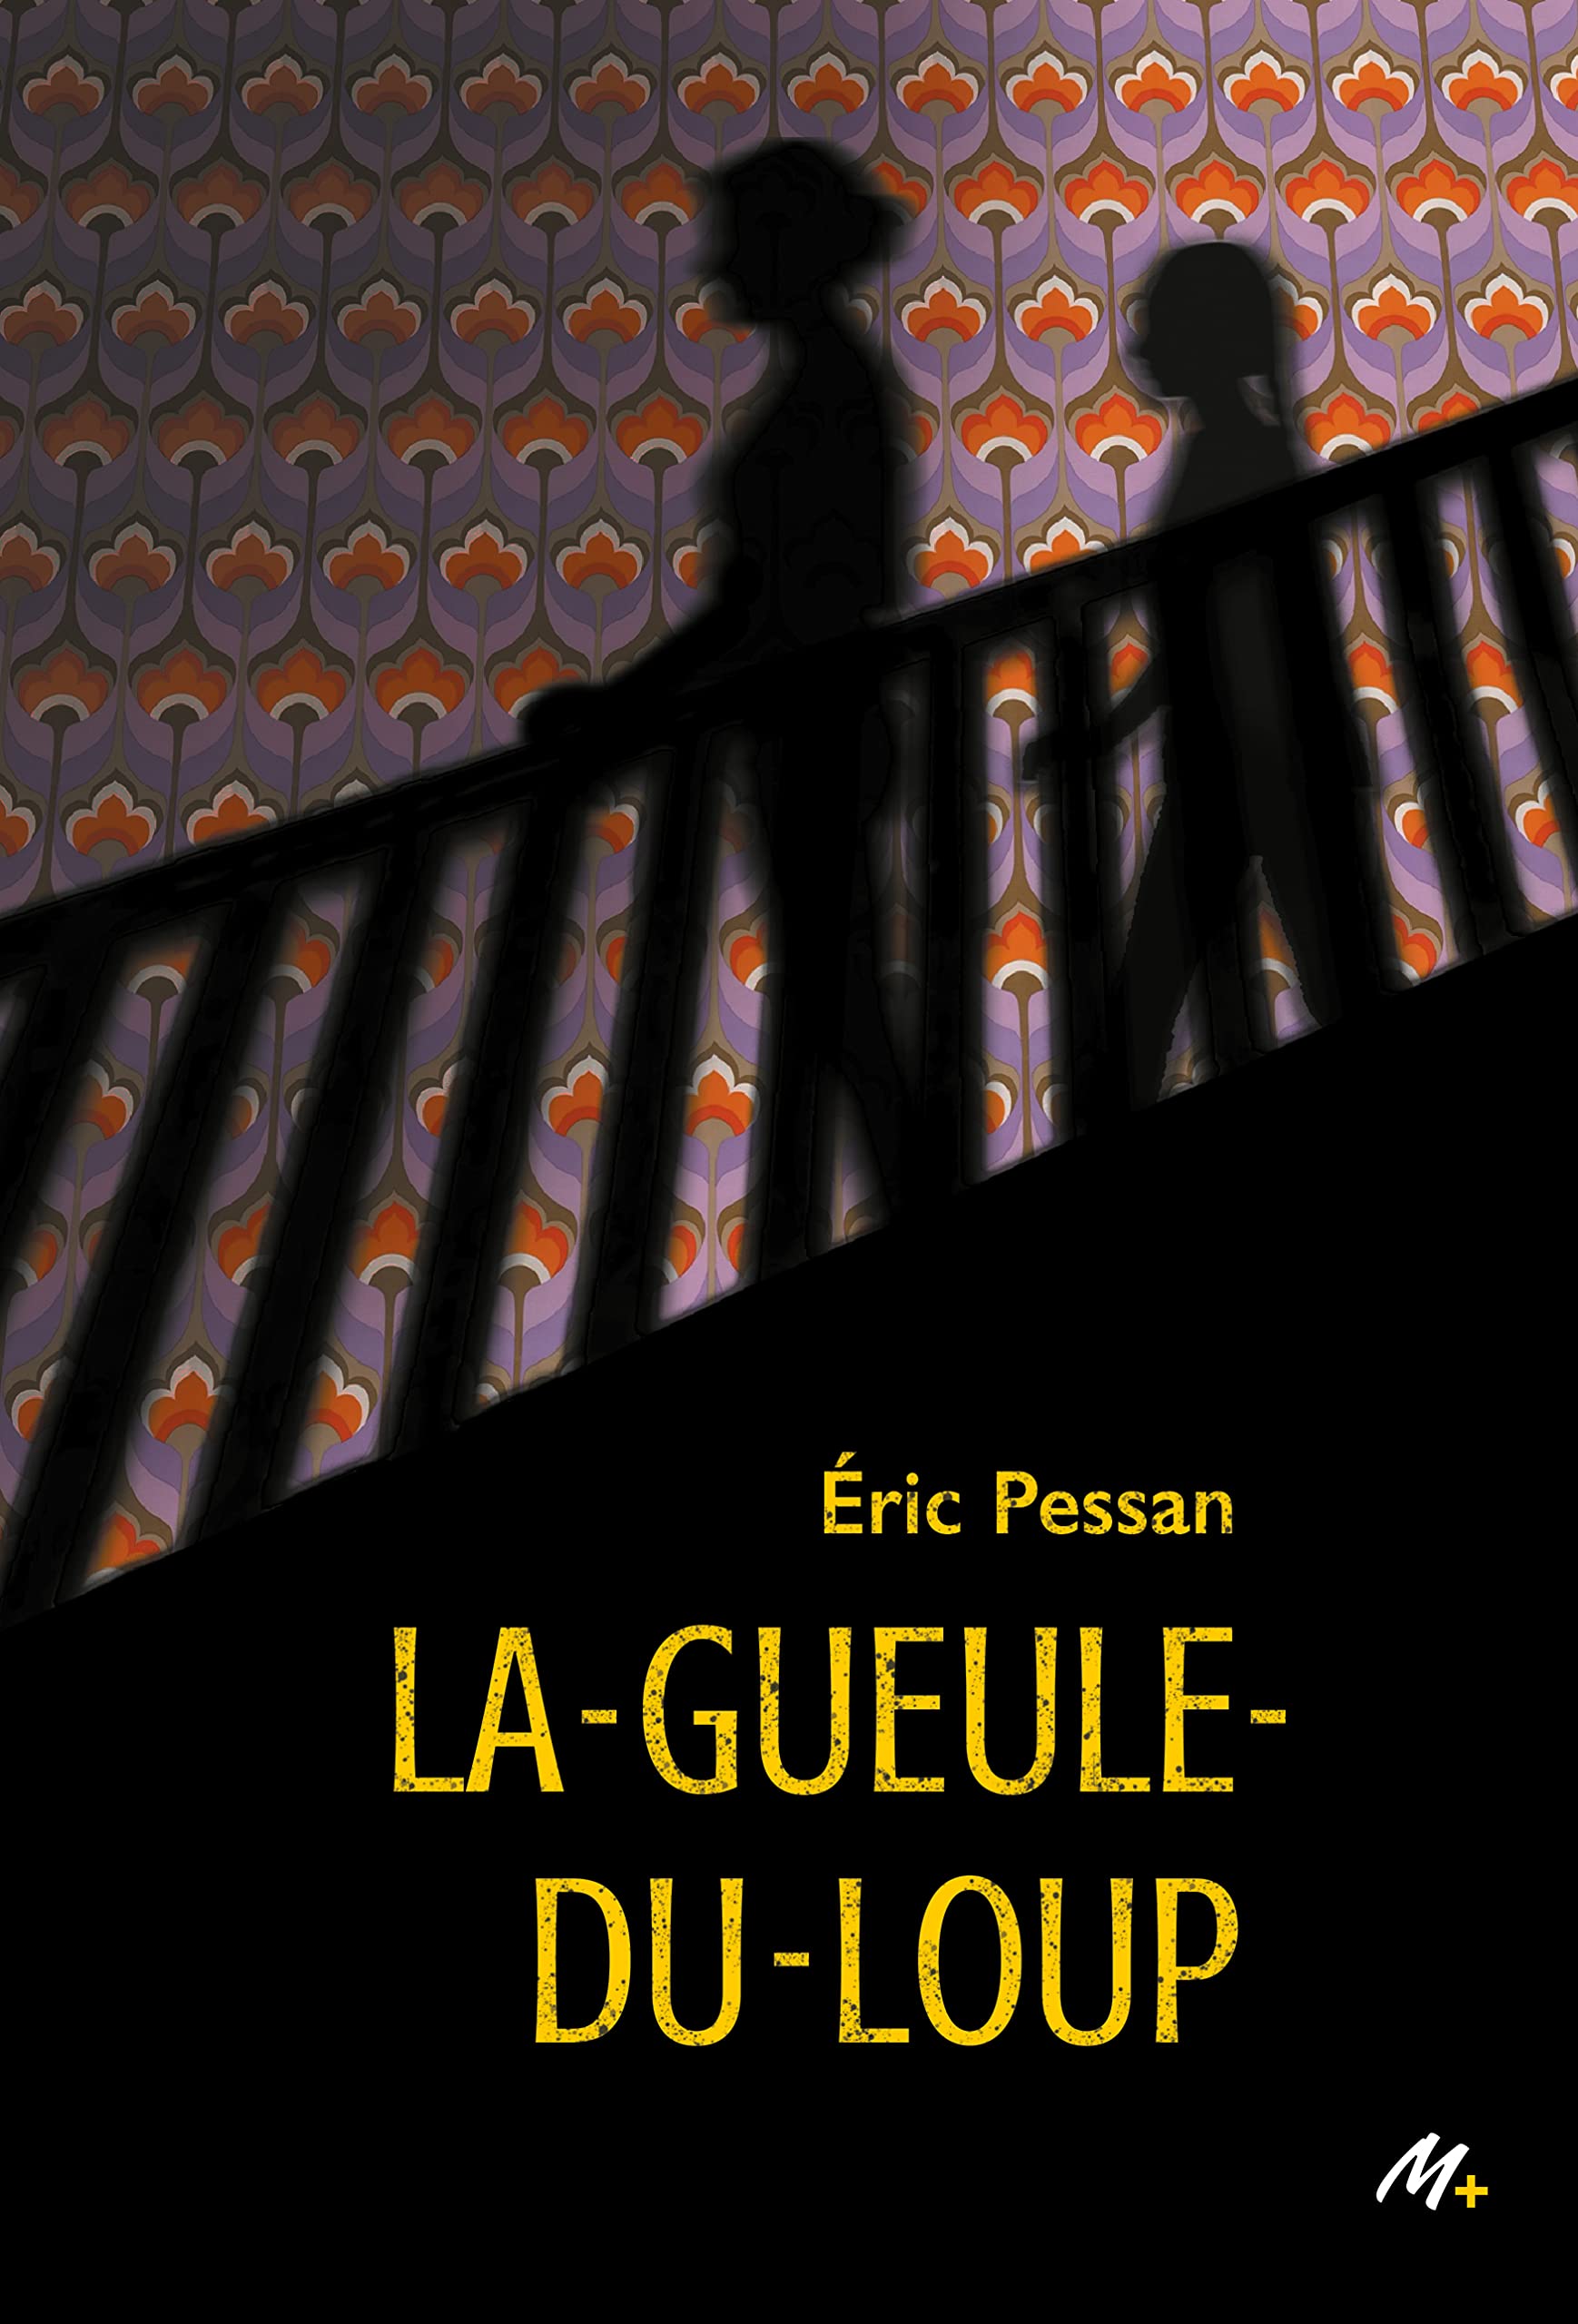 Romans La Nuit du Loup-Garou, Grand format littérature